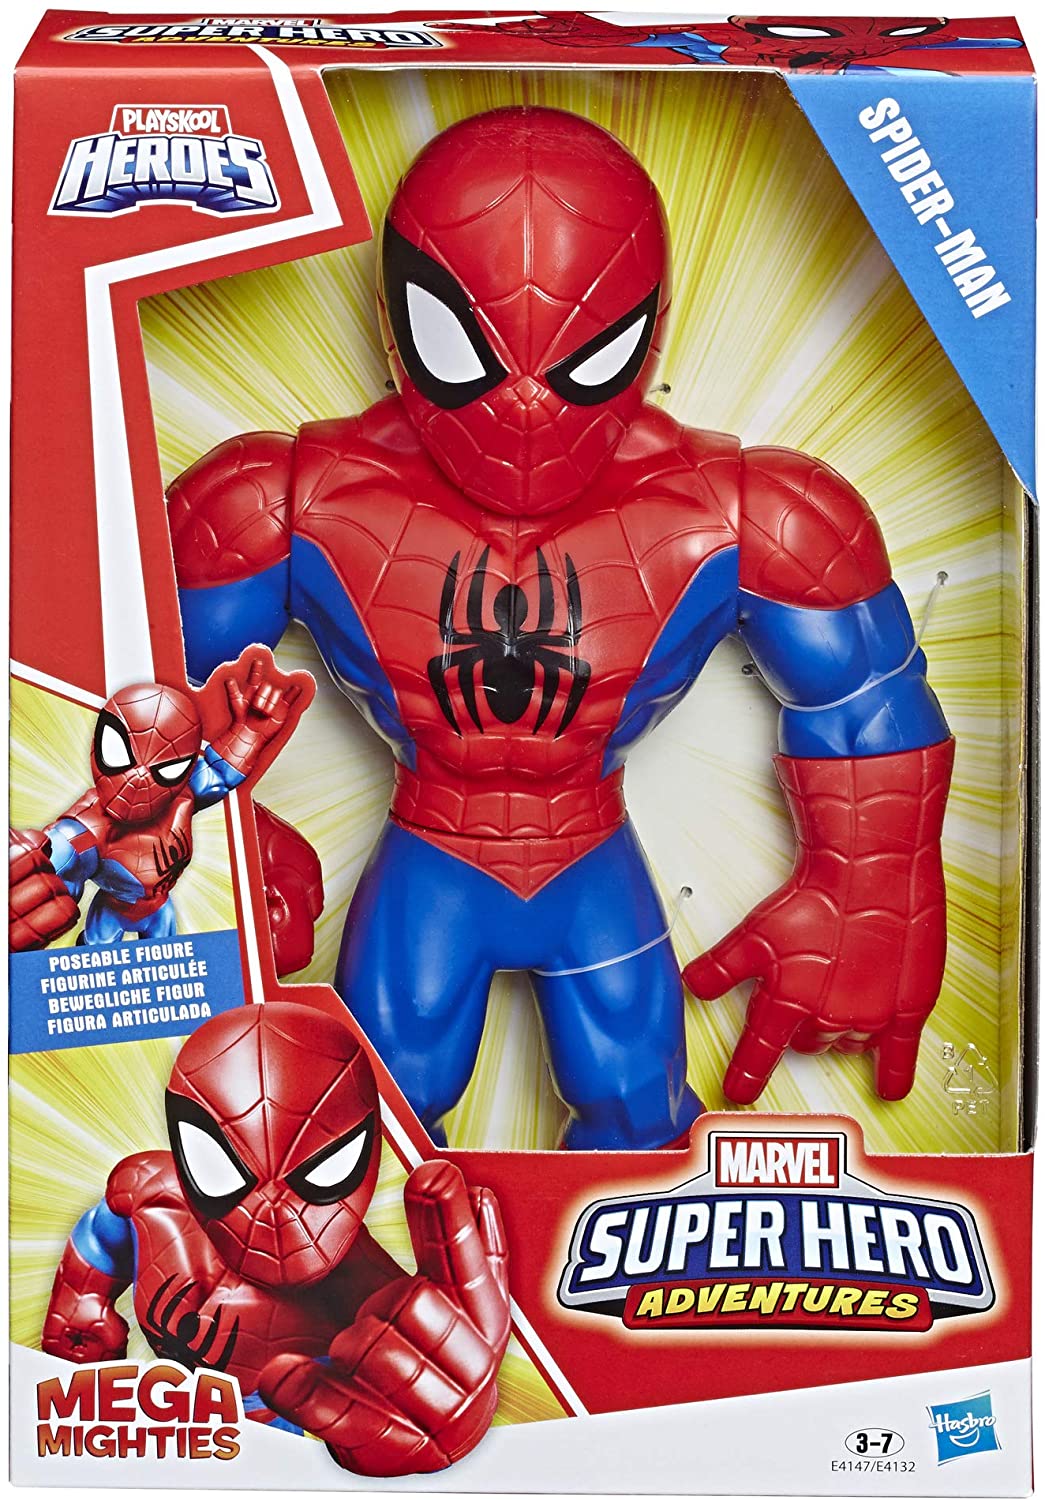 Playskool Heroes Marvel Super Hero Adventures Mega Mighties Spider Man